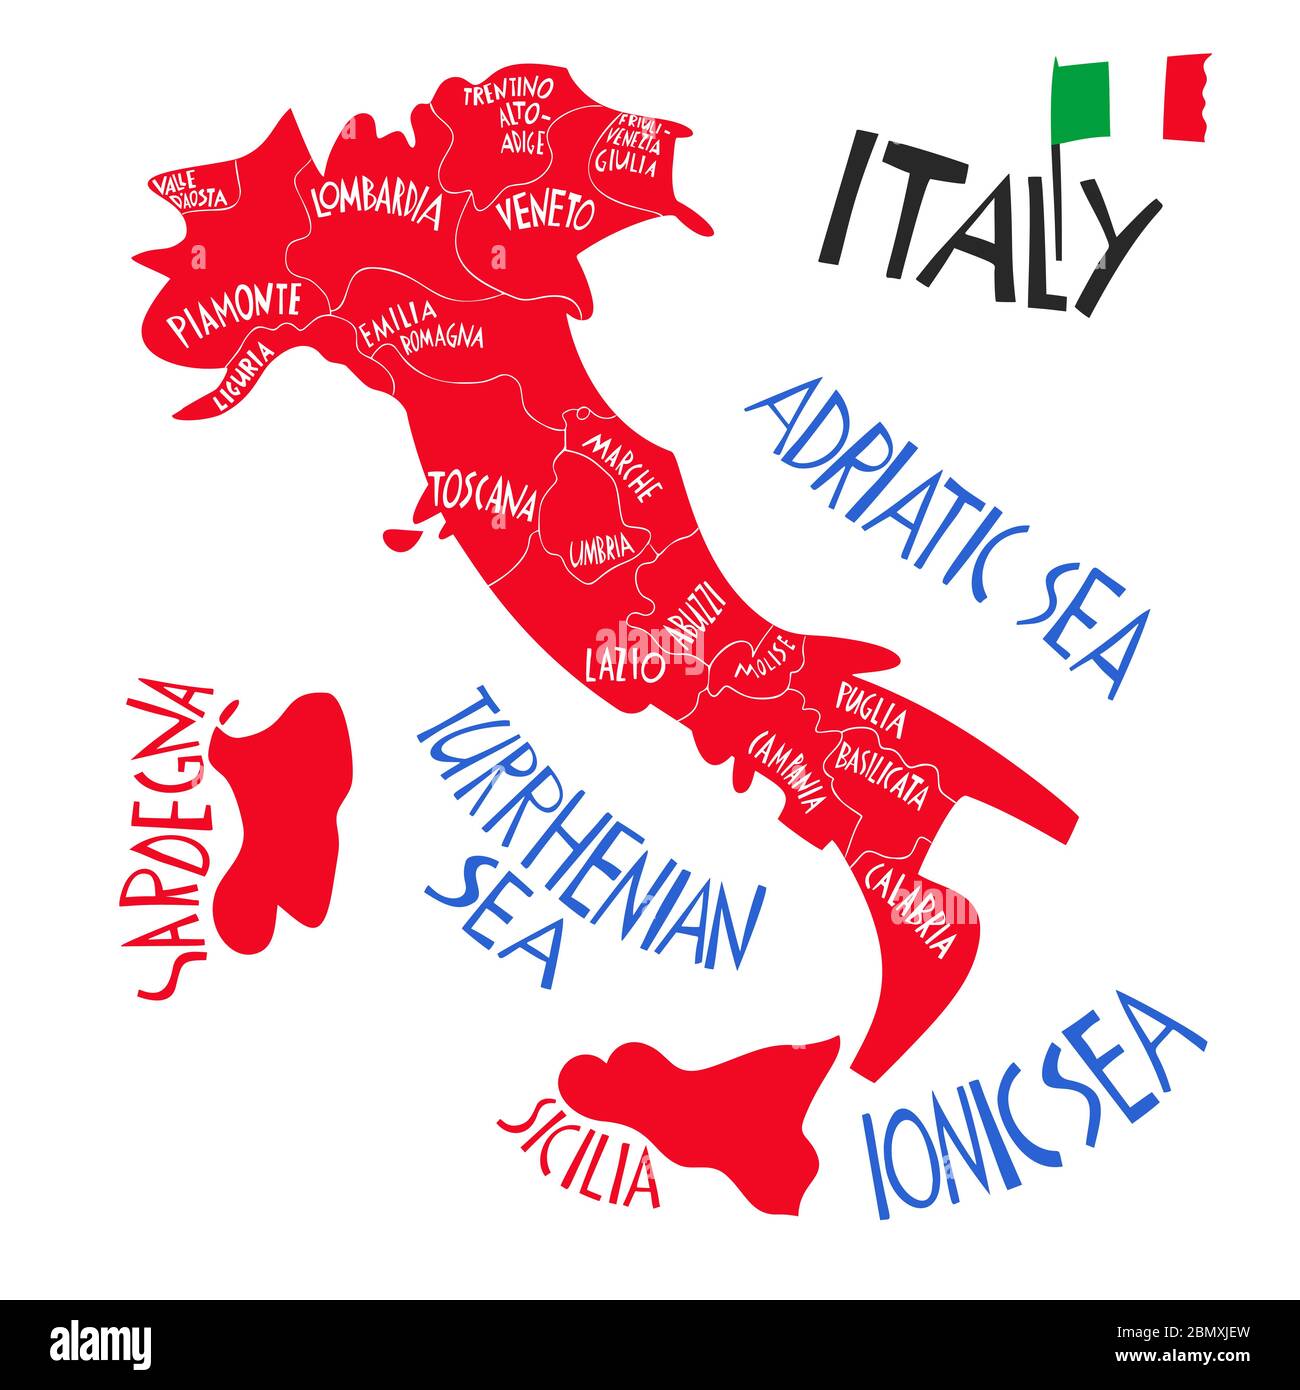 Vektor Hand gezeichnet stilisierte Karte der Italienischen Republik. Reisedarstellung der italienischen Provinzen. Handgezeichnete Beschriftung. Europa mittelmeer ma Stock Vektor